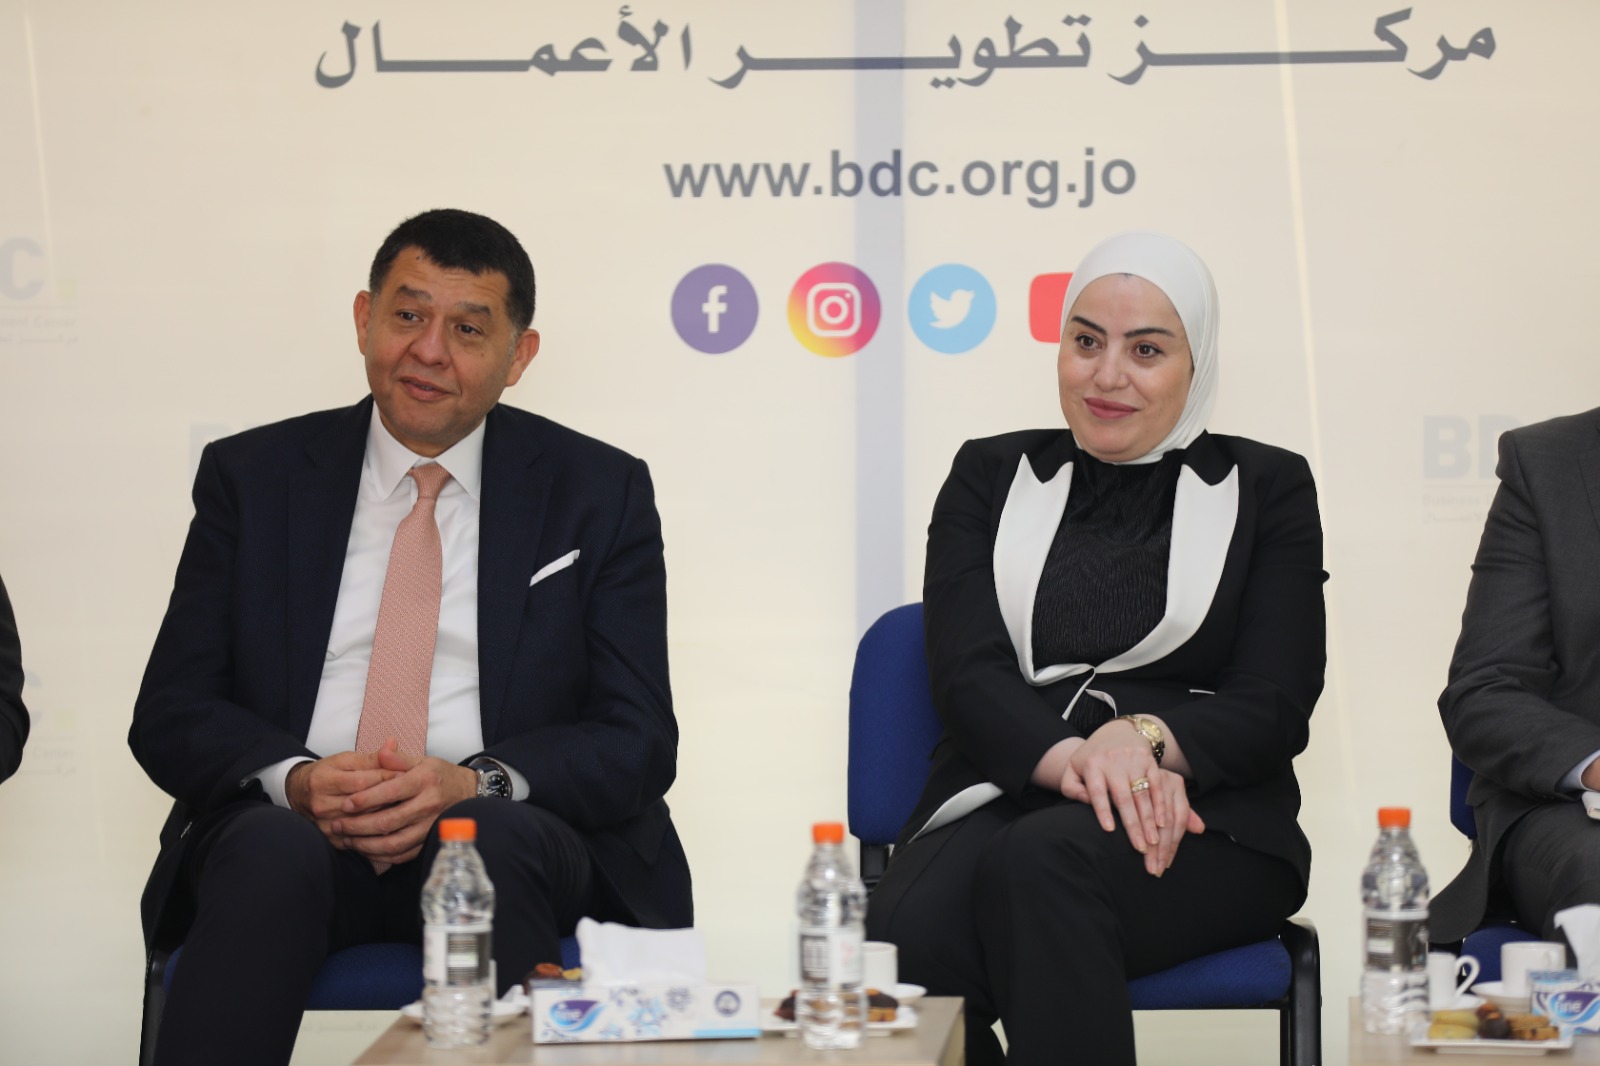 اتفاقية تعاون بين مركز تطوير الأعمال - BDC ووزارة التنمية الاجتماعية لتمكين الشباب في المناطق الأقل حظاً